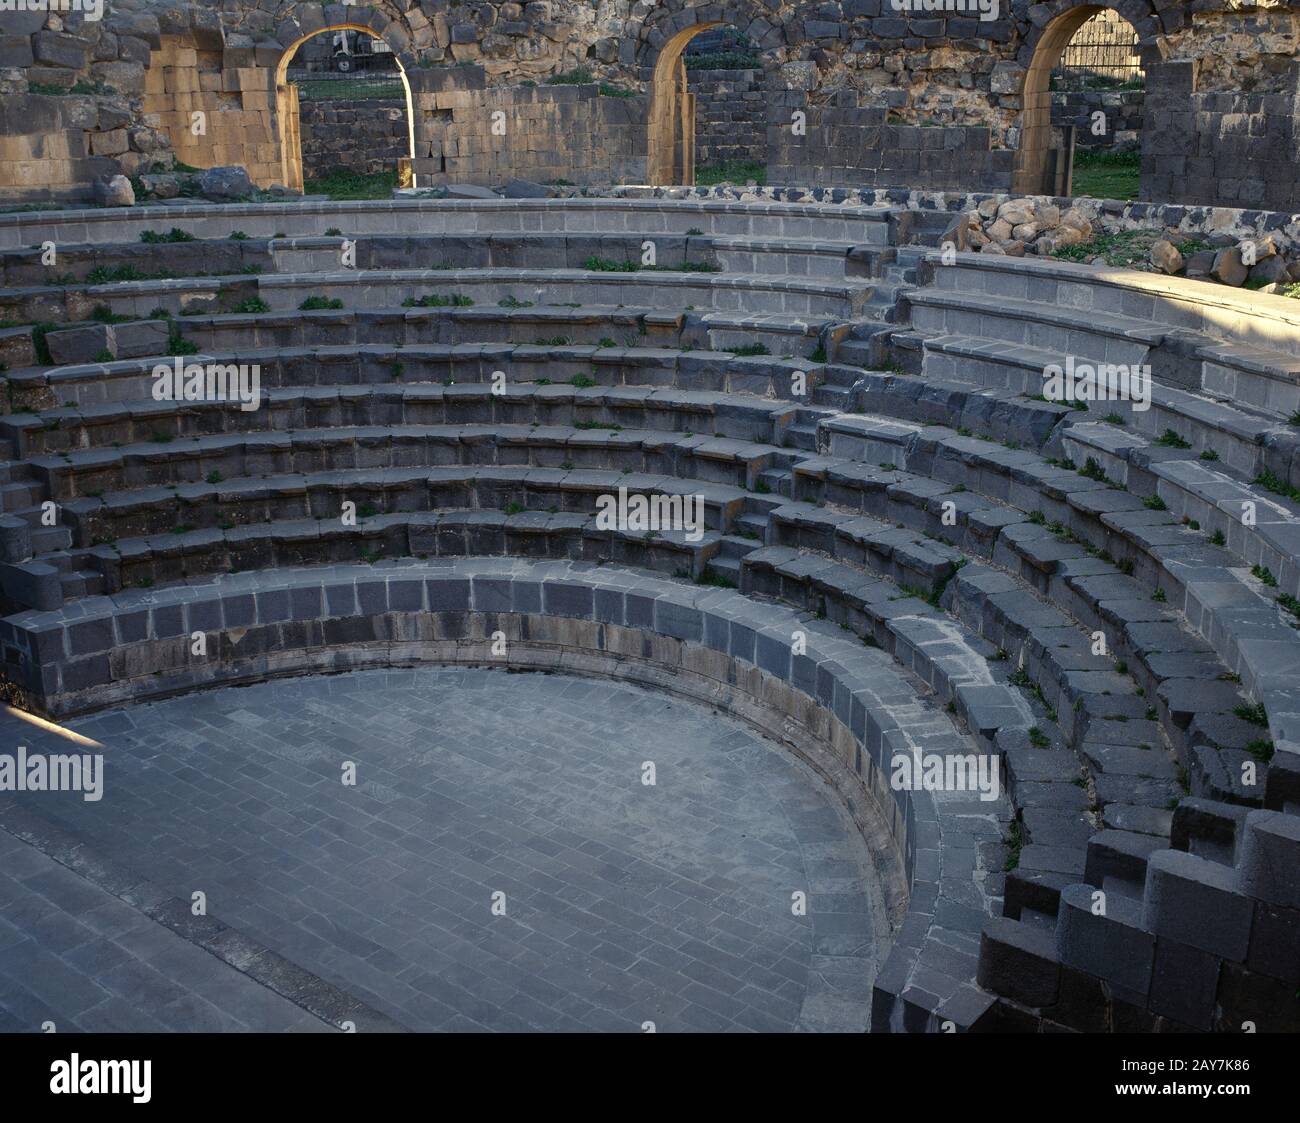 Syrien, Shahba (in Der Spätantike als Philippopolis bekannt). Blick auf das Theater mit Basaltblöcken. Jahrhundert. Foto vor dem syrischen Bürgerkrieg gemacht. Stockfoto